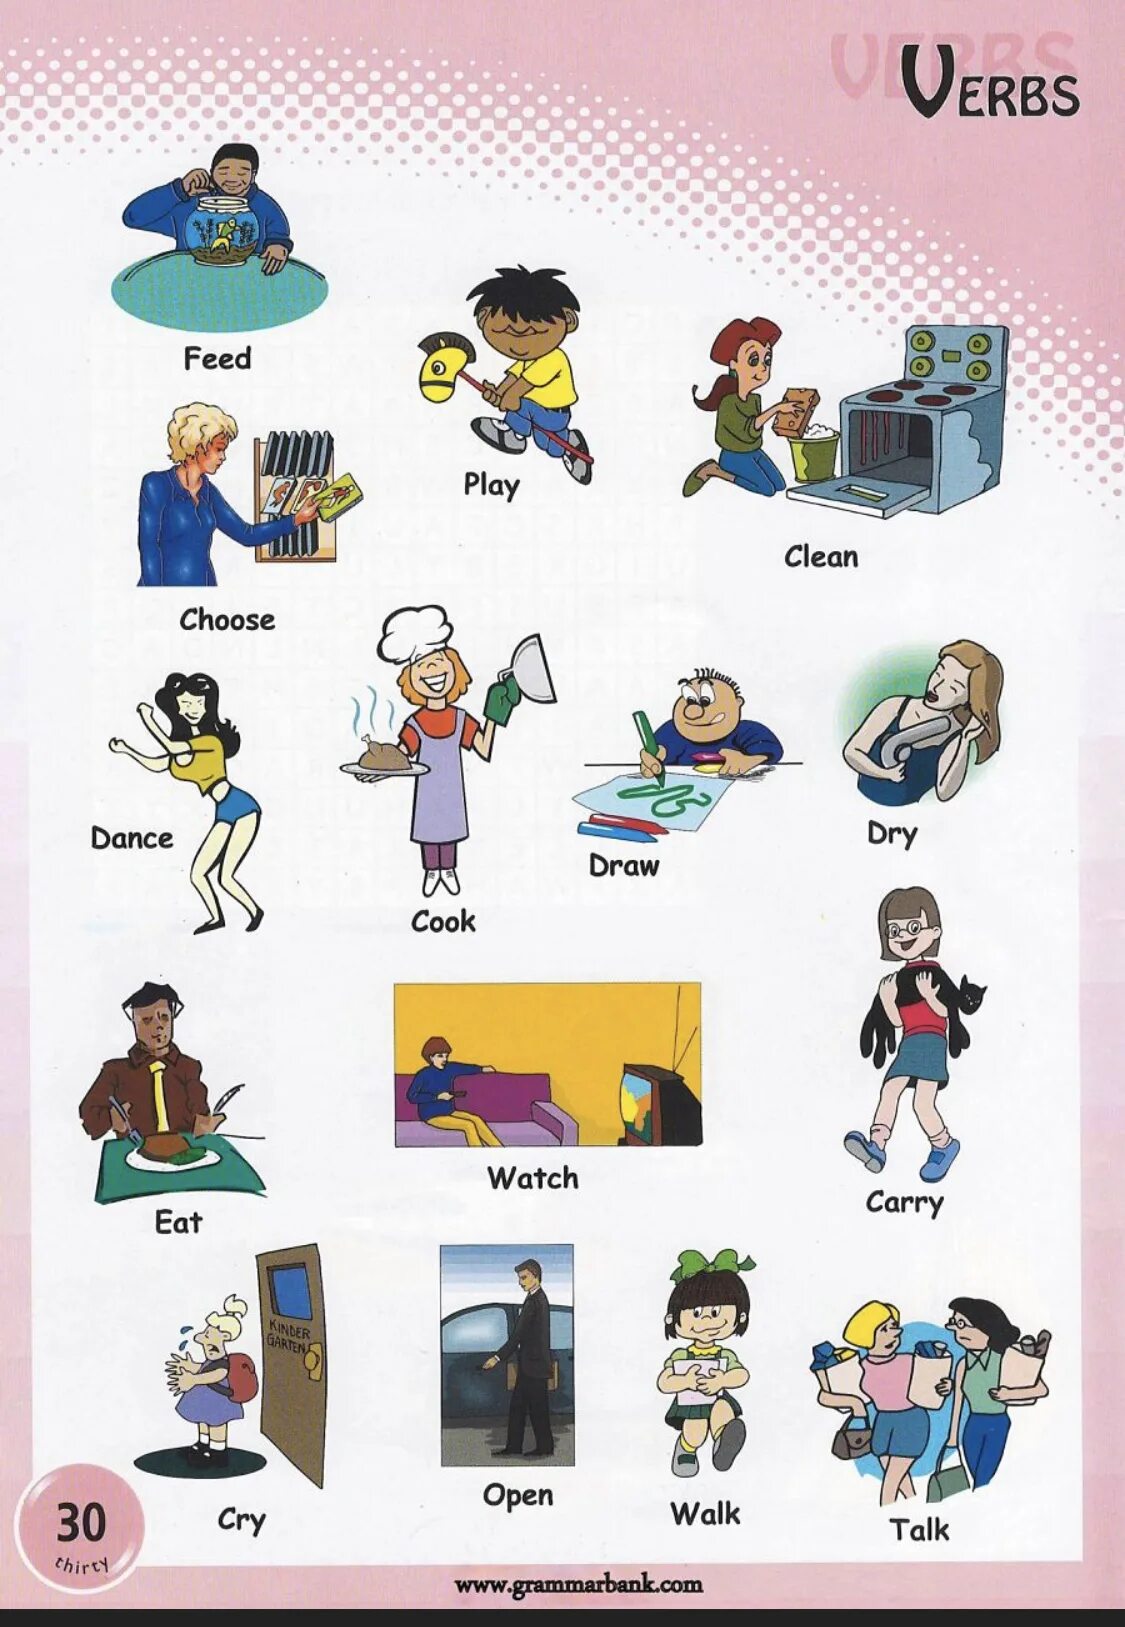 Action verbs в английском. Глаголы действия в английском языке. Глаголы на англ для детей. Глаголы действия на английском языке для детей. Common actions